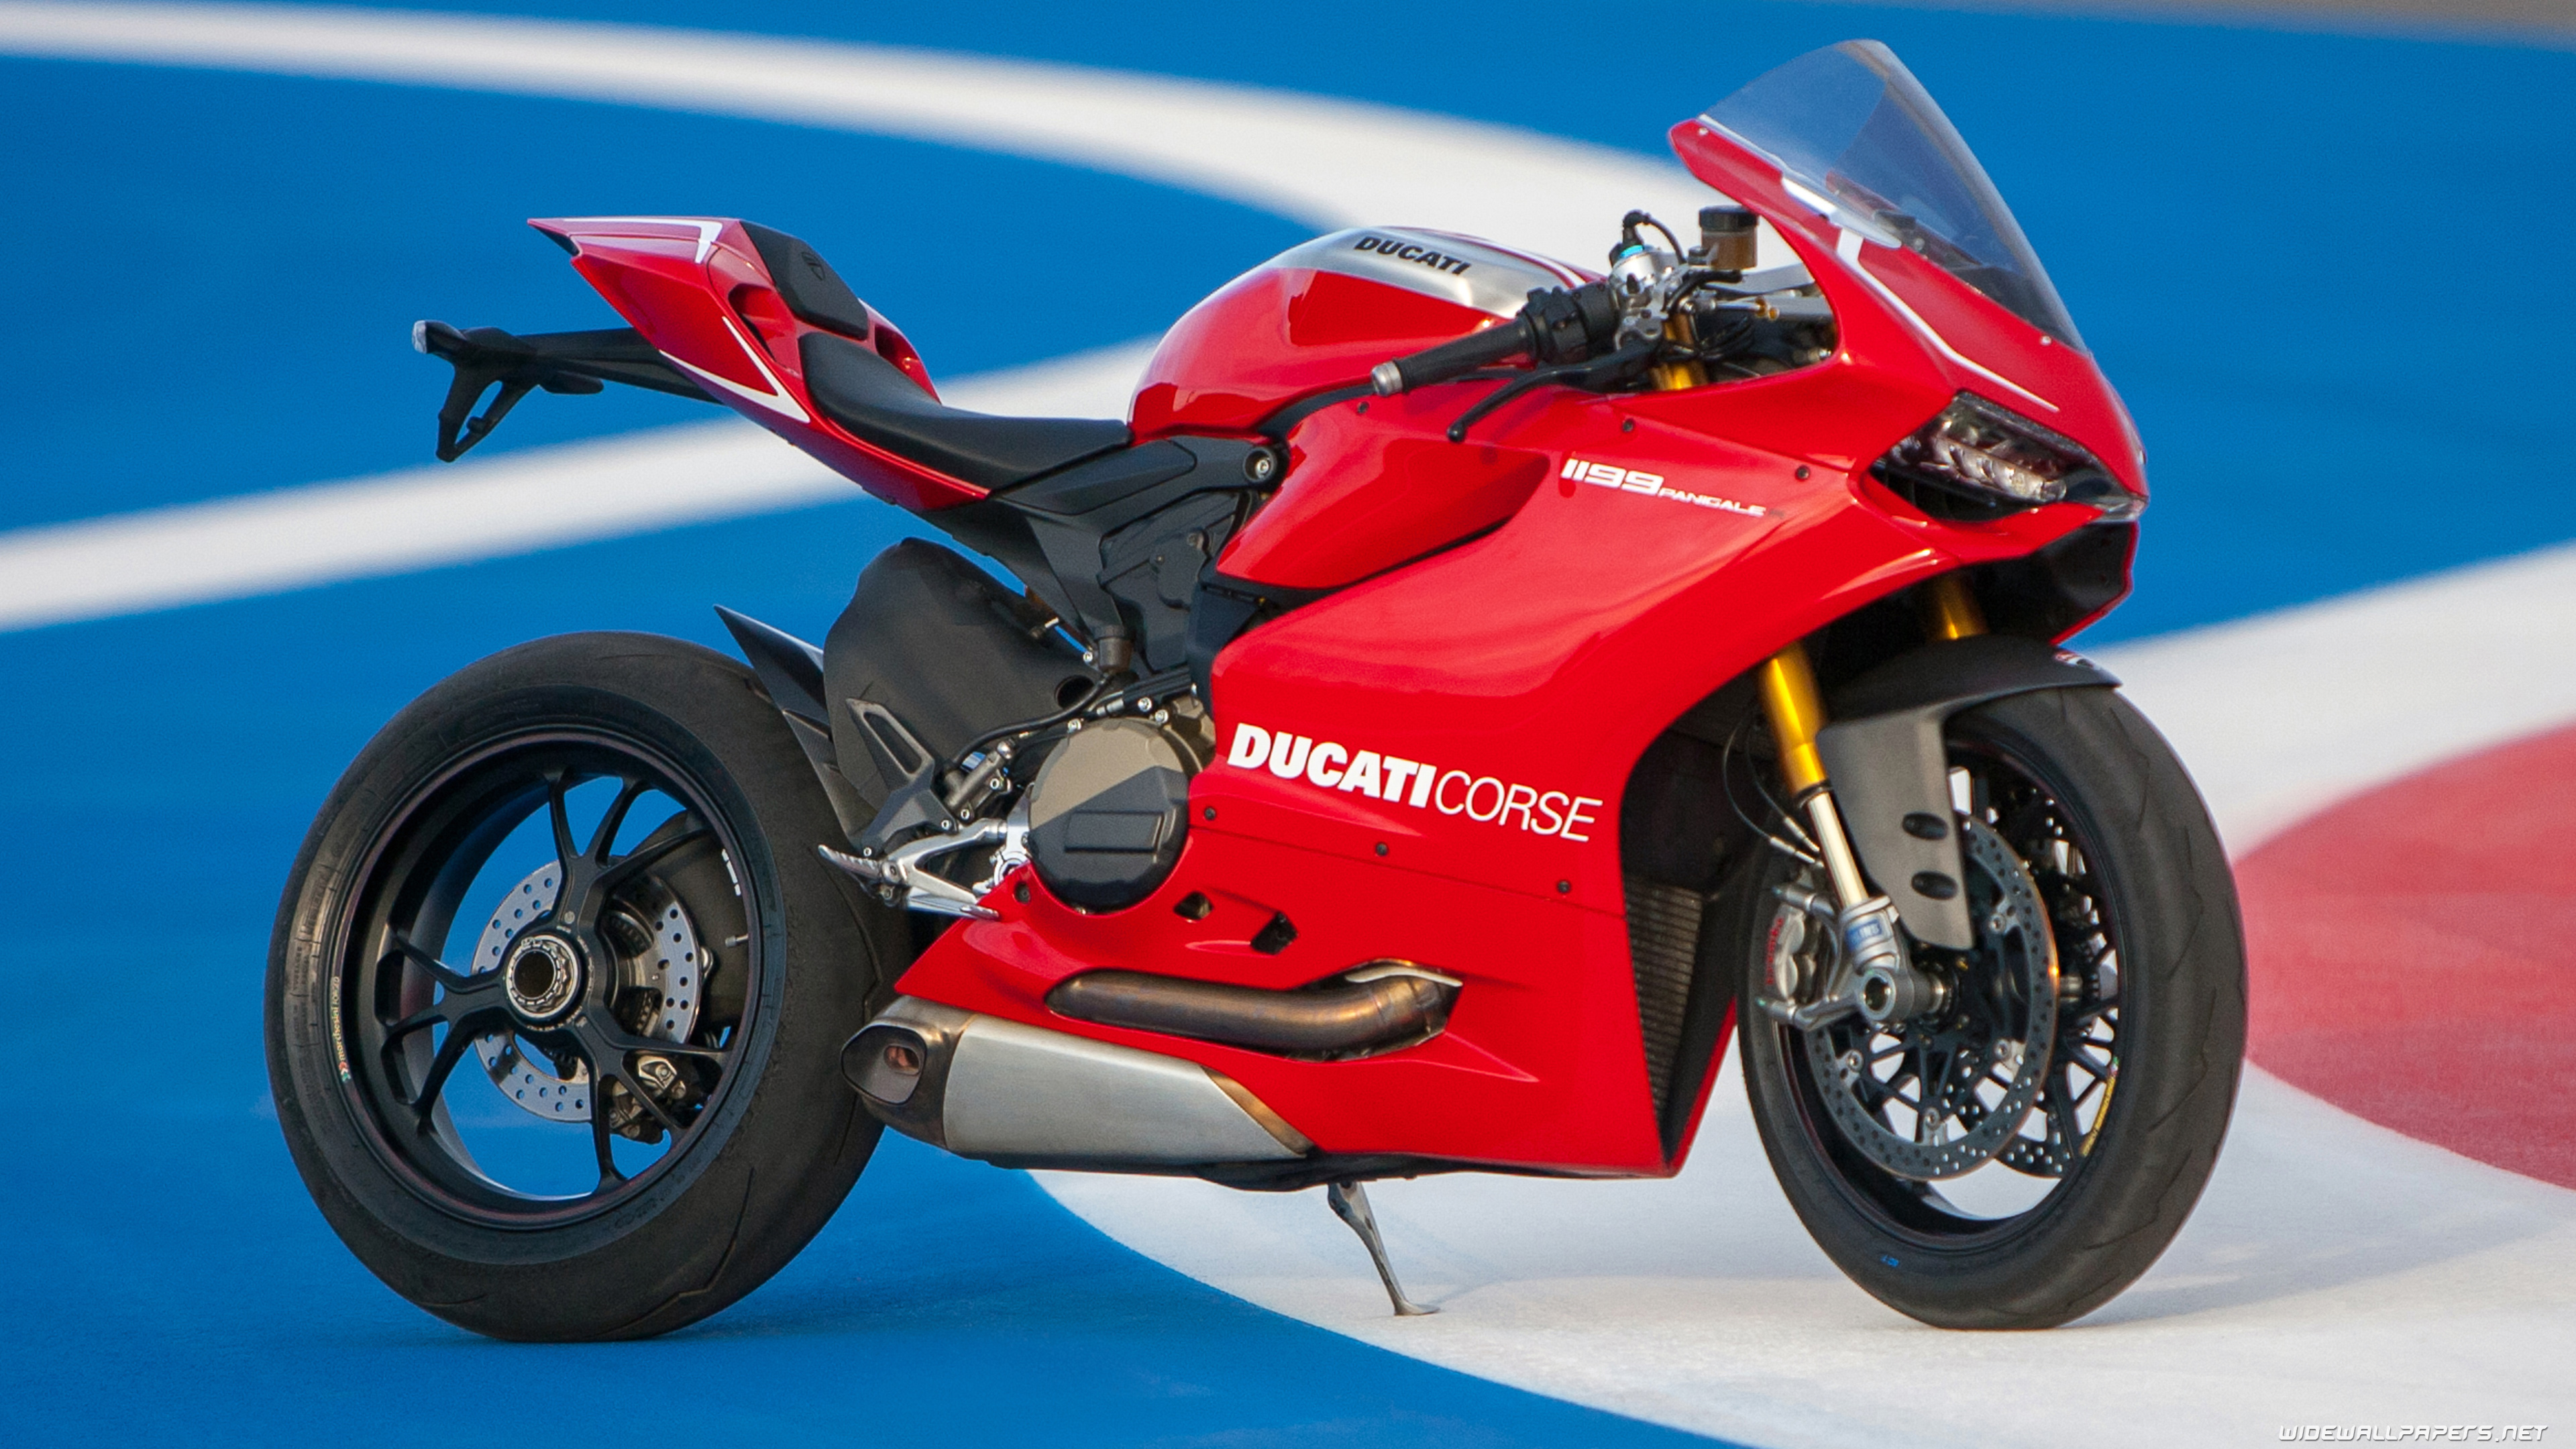 Ducati Superbike 1199 Panigale motorcycle desktop